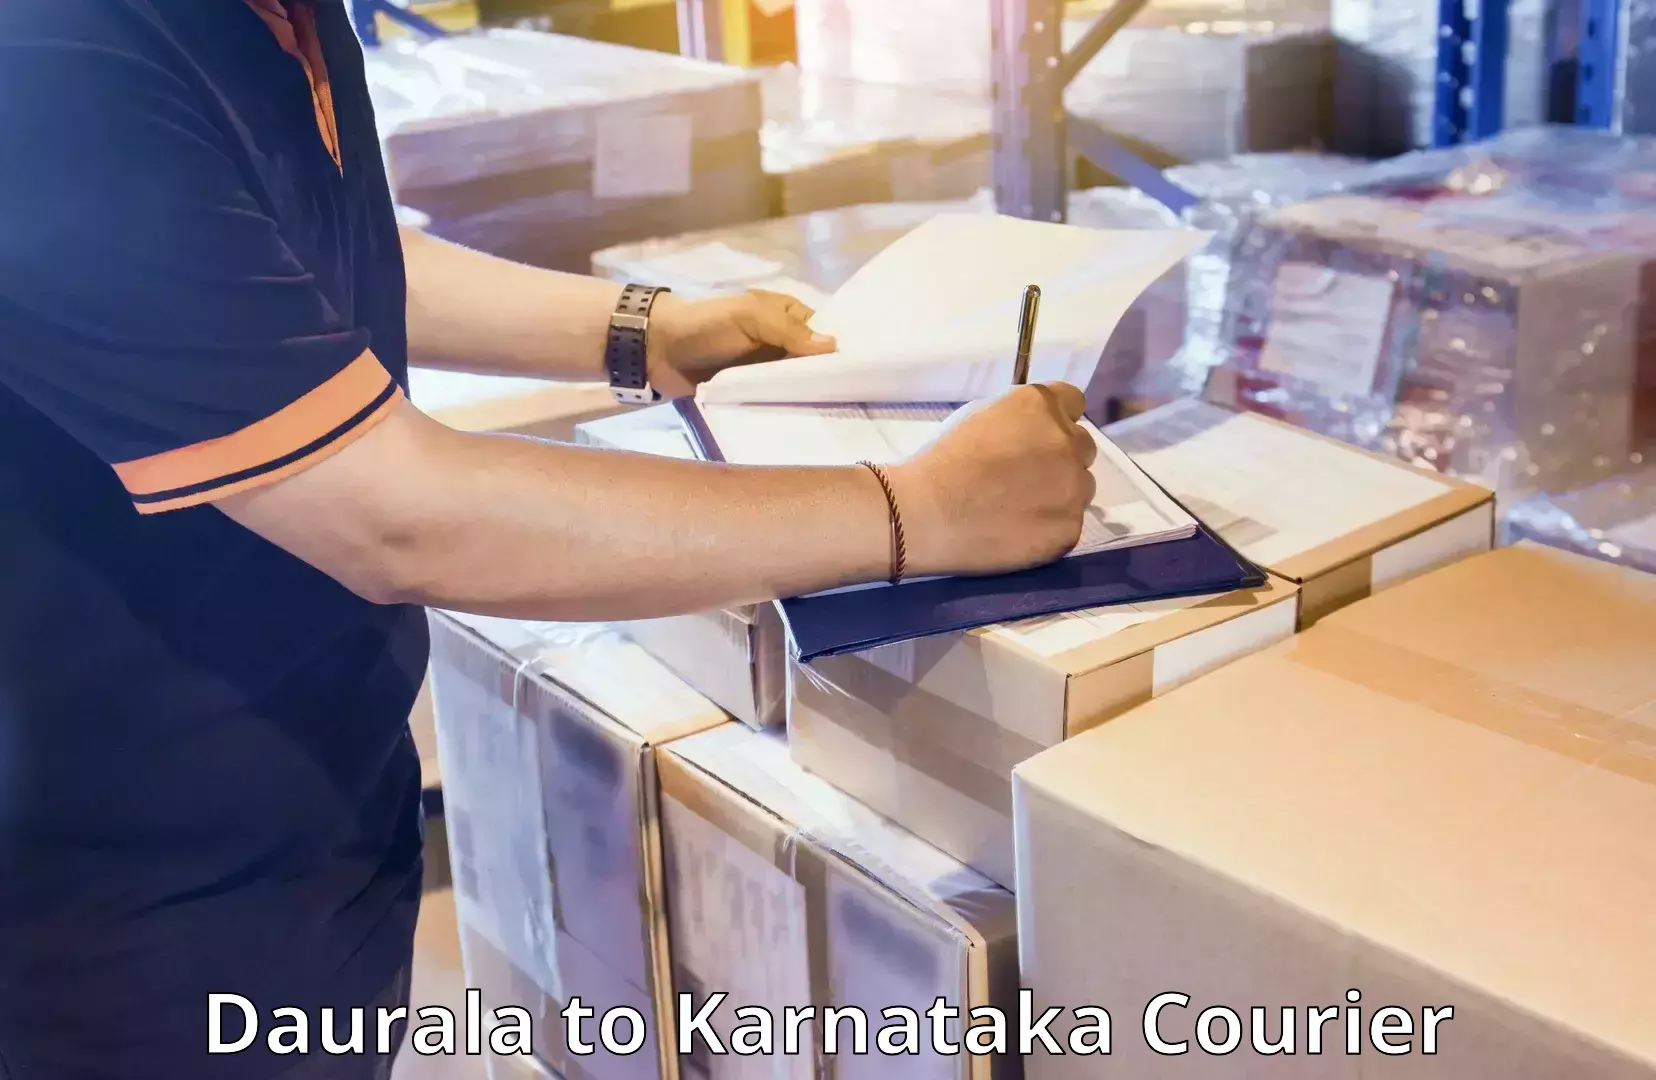 Reliable luggage courier Daurala to Karnataka